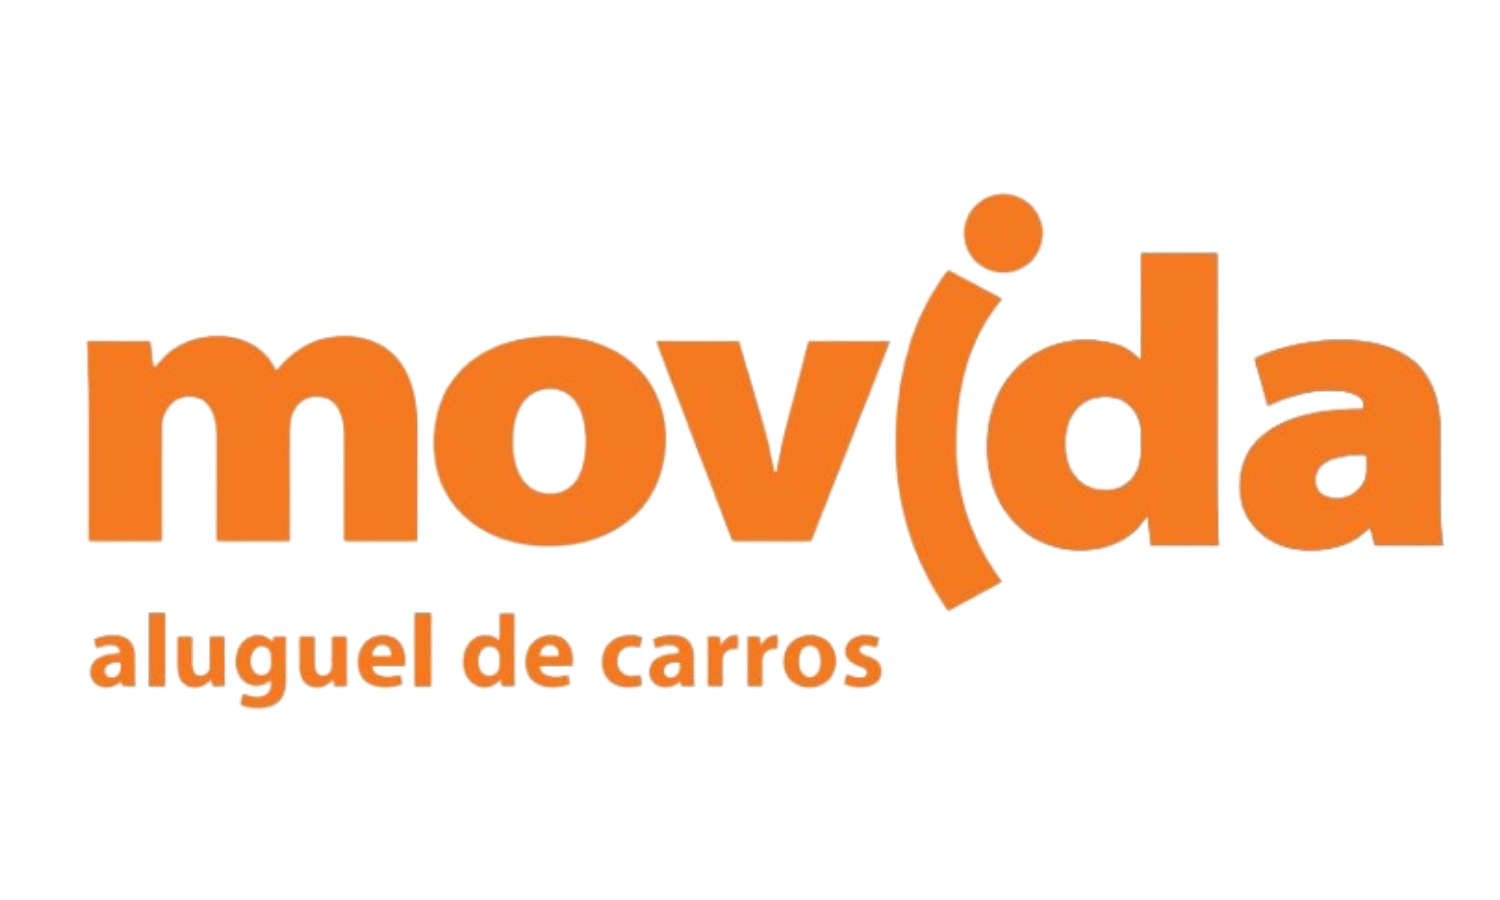 Movida